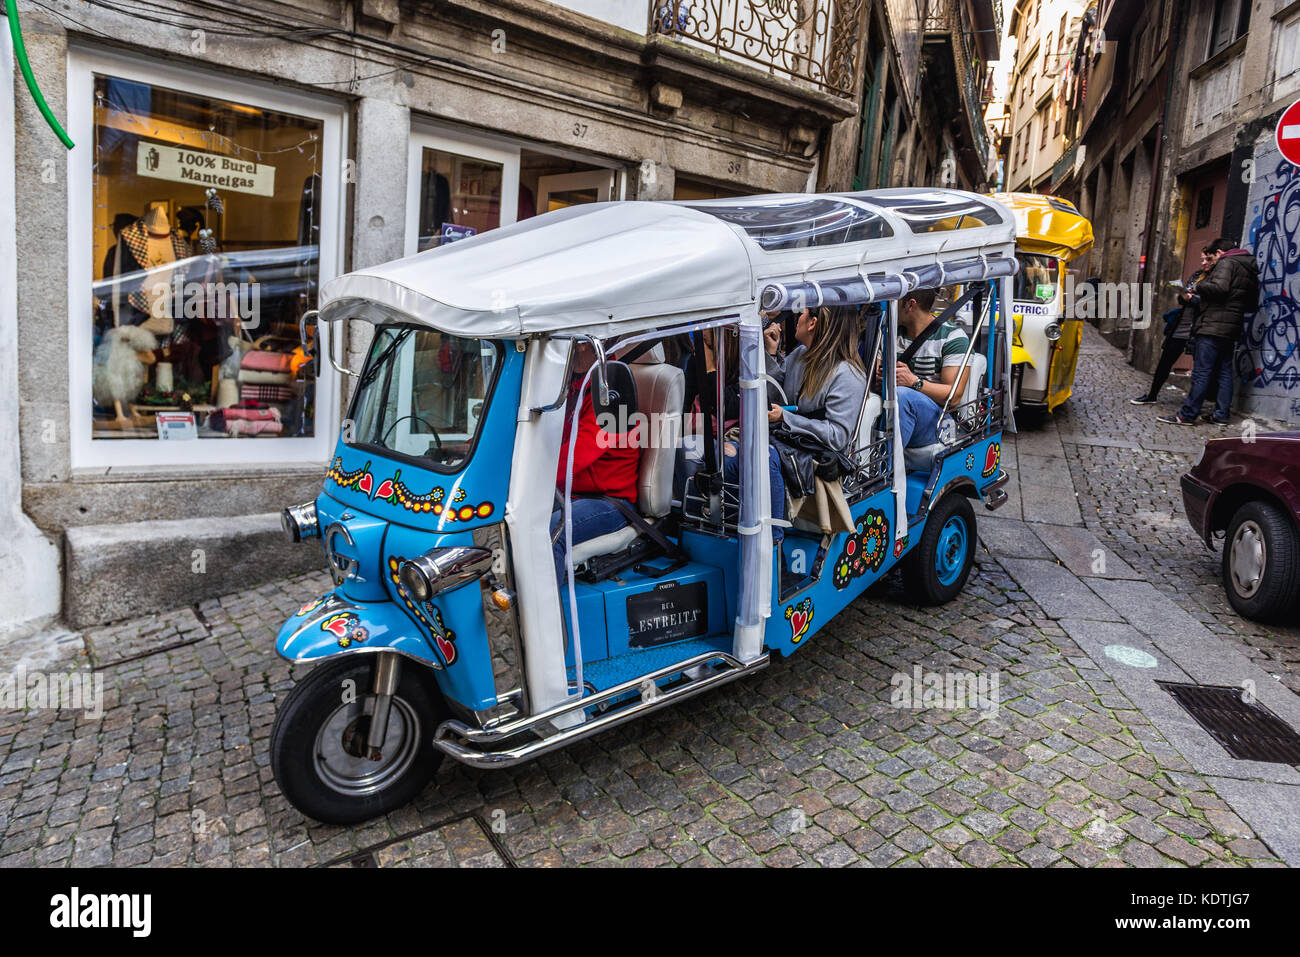 Véhicule Tuk Tour dans une rue étroite dans le quartier de Ribeira dans la vieille partie de Porto sur la péninsule ibérique, deuxième plus grande ville du Portugal Banque D'Images